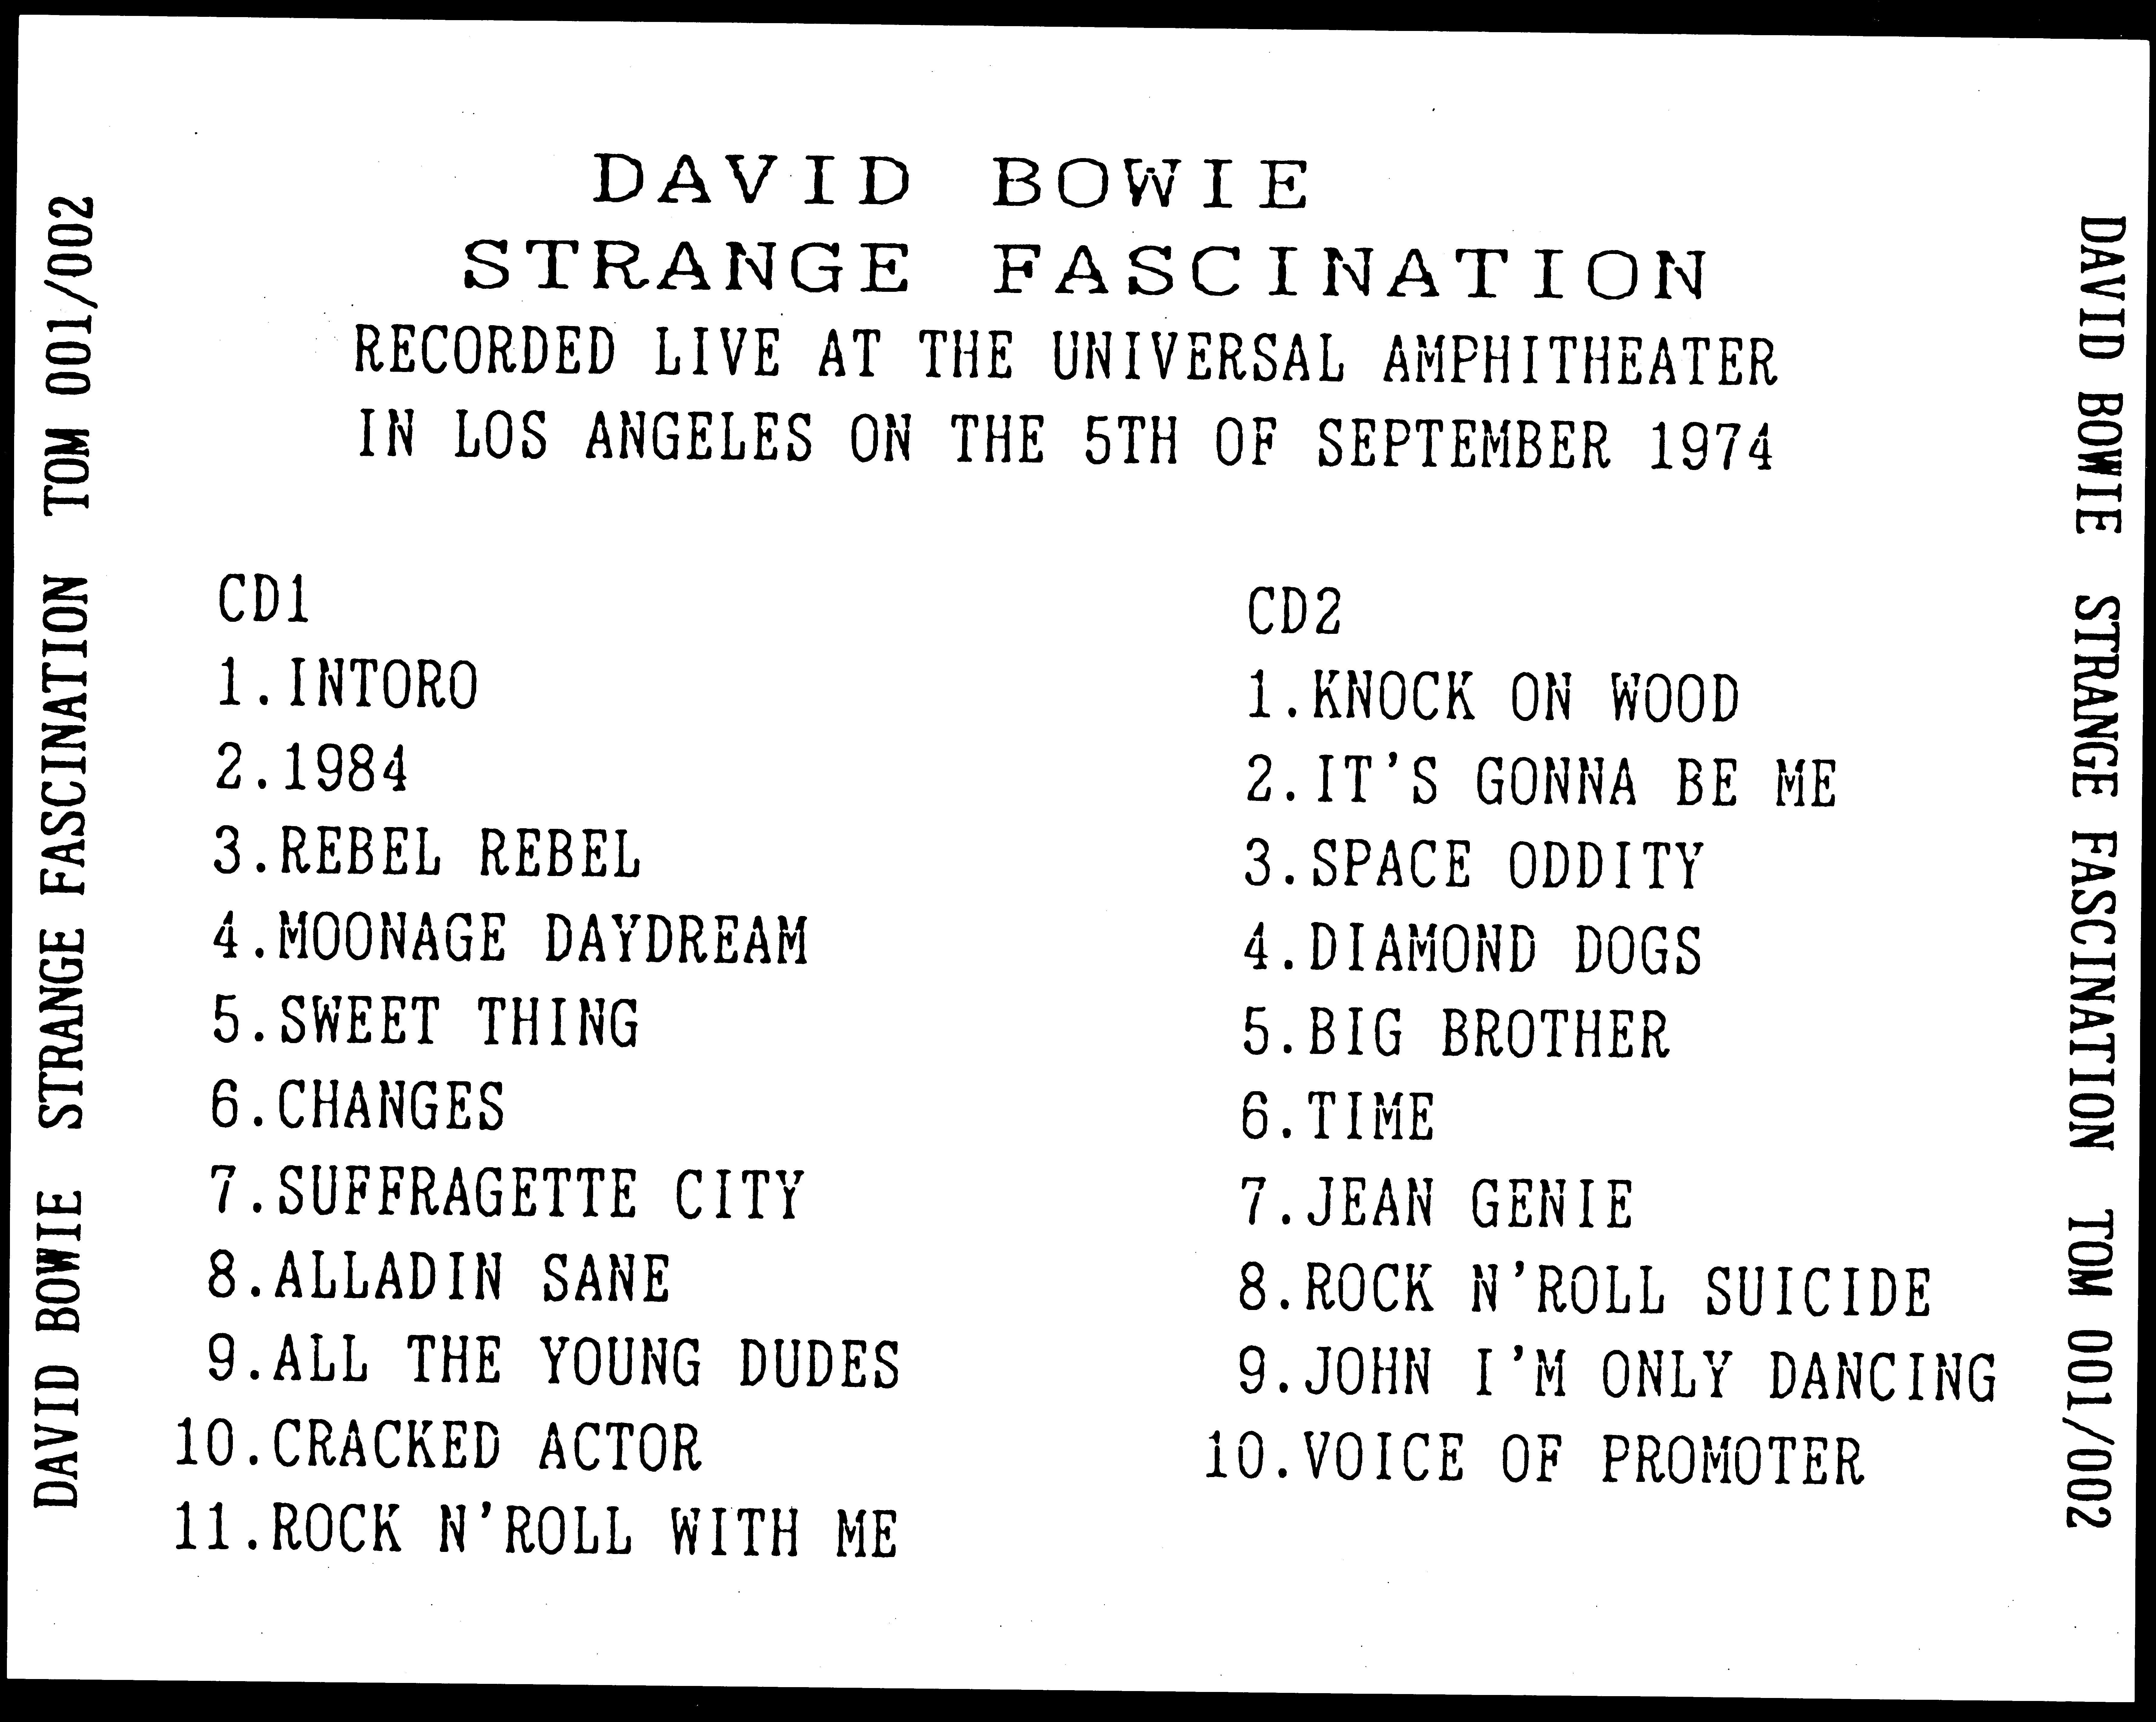 DavidBowie1974-09-05UniversalAmphitheatreLosAngelesCA (1).jpg